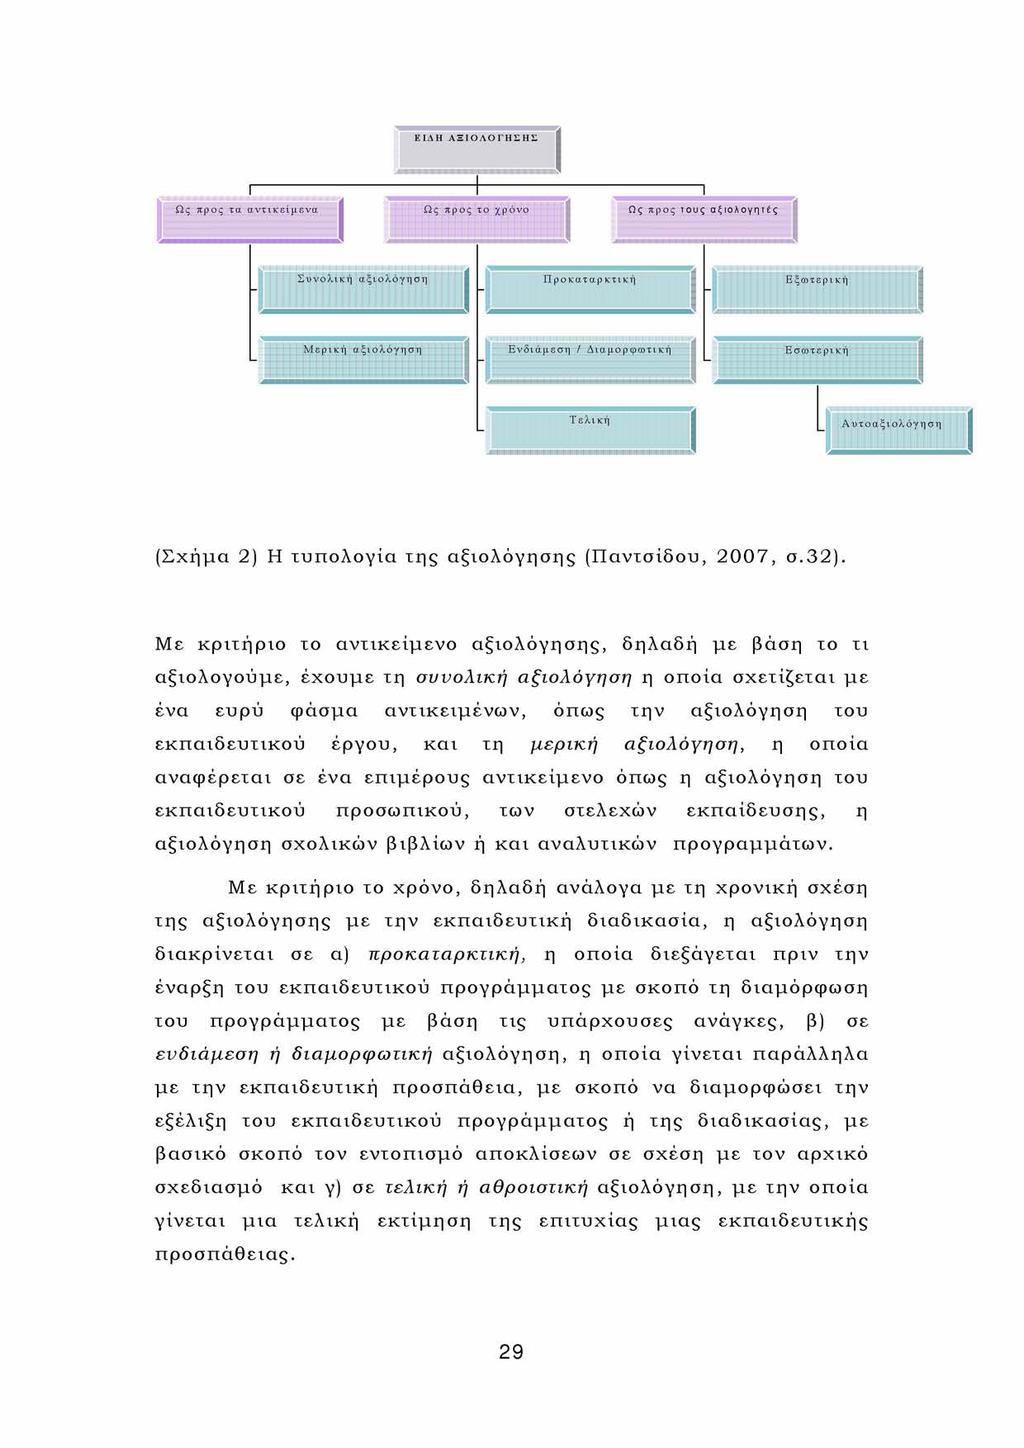 (Σχήμα 2) Η τυπολογία της αξιολόγησης (Παντσίδου, 2007, σ.32).